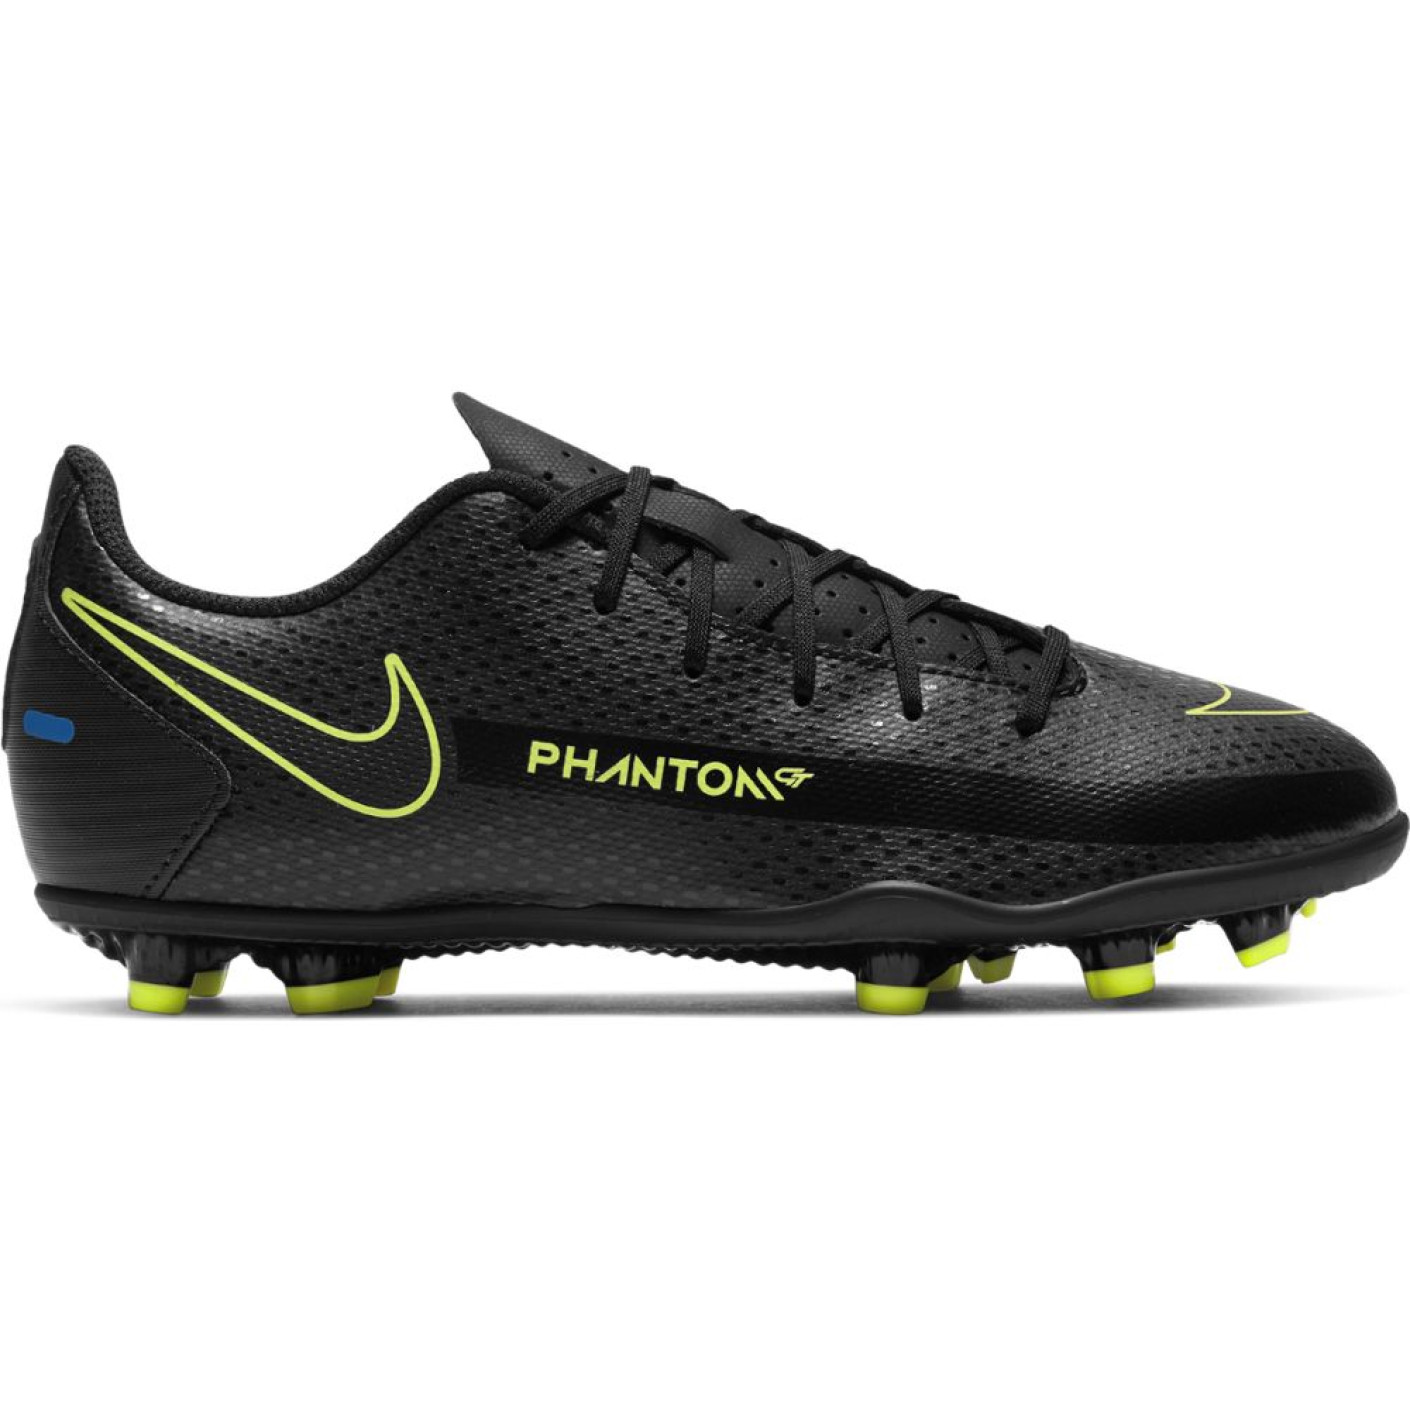 Nike Phantom GT Club Grass/Artificial Turf Chaussures de Foot (MG) Enfants Noir Jaune Bleu